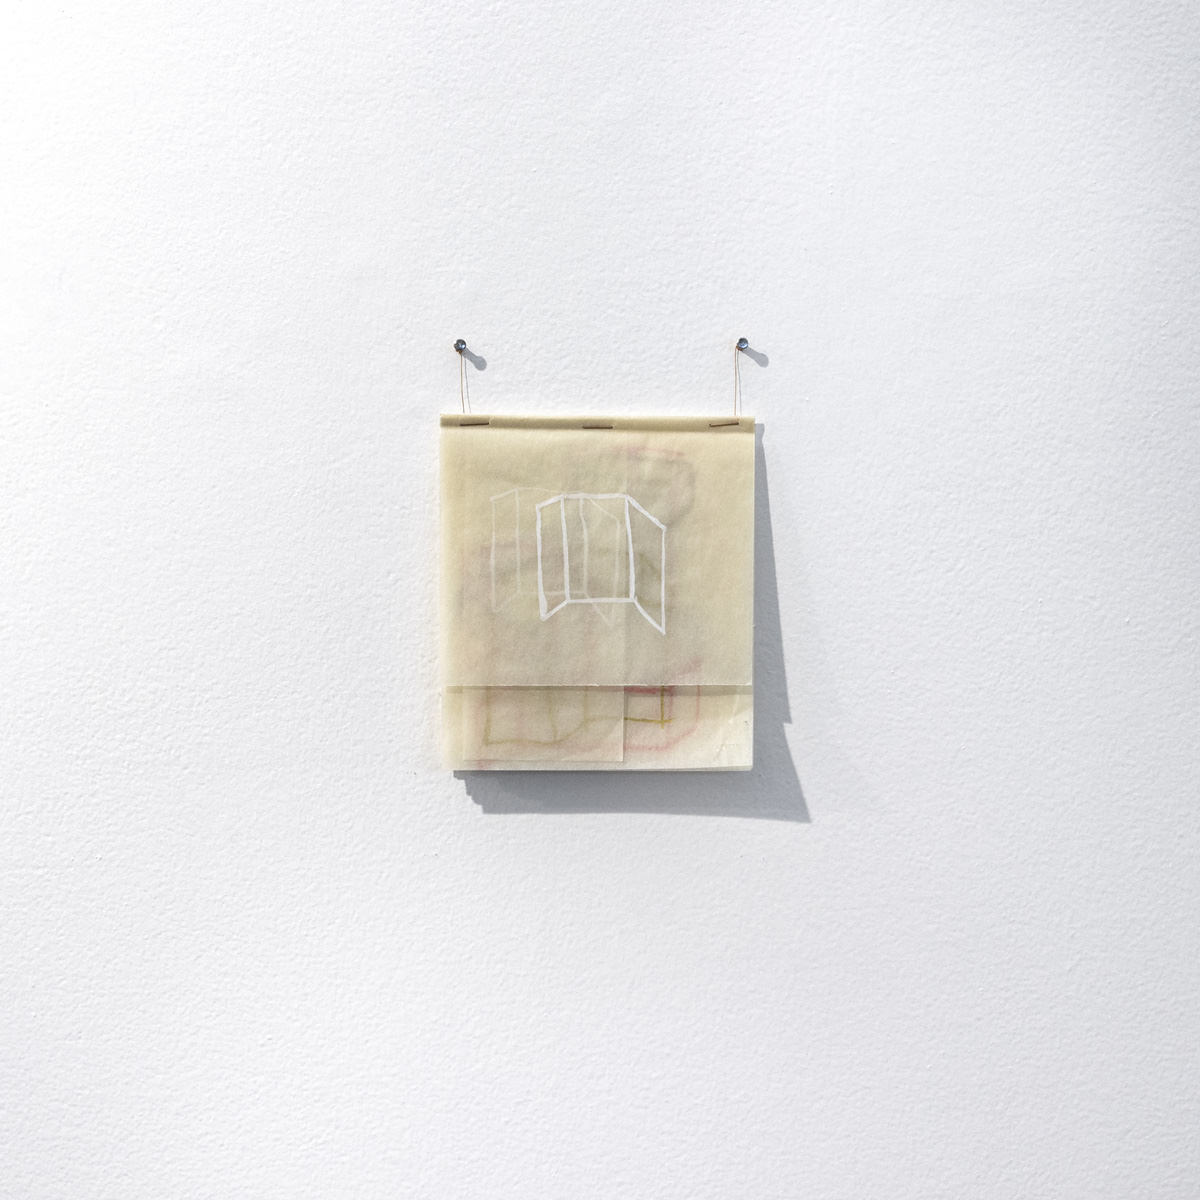 Flávia Ribeiro, Dessin, 2019 - gouache et poudre de bronze sur une double feuille de papier à croquis - 28,7 x 21 cm. Photos: Divulgation.